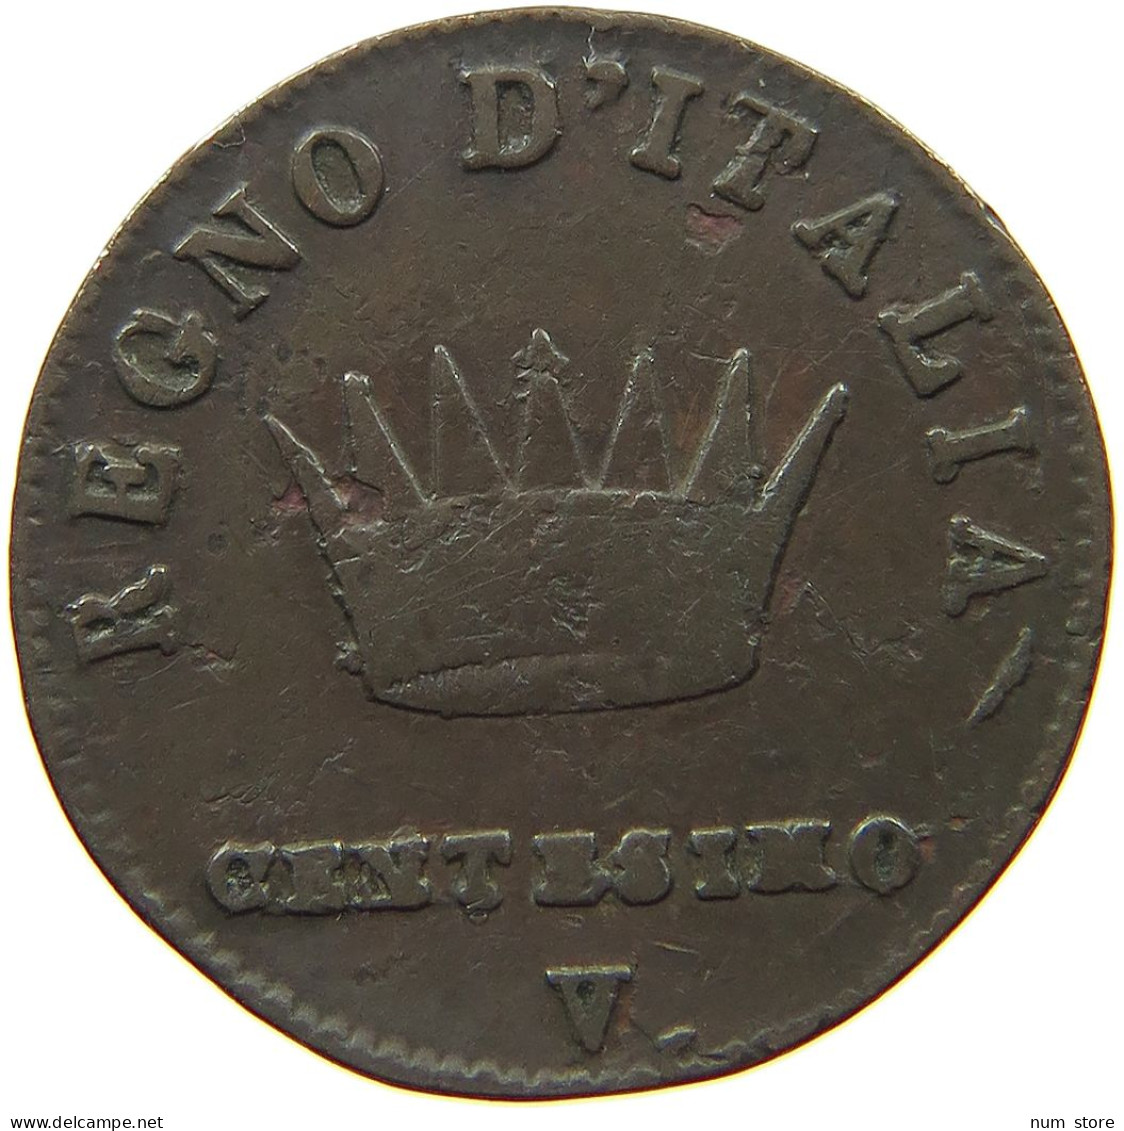 ITALY STATES NAPOLEON I. CENTESIMO 1810 V Napoleon I. (1804-1814, 1815) #t144 0907 - Napoleonic